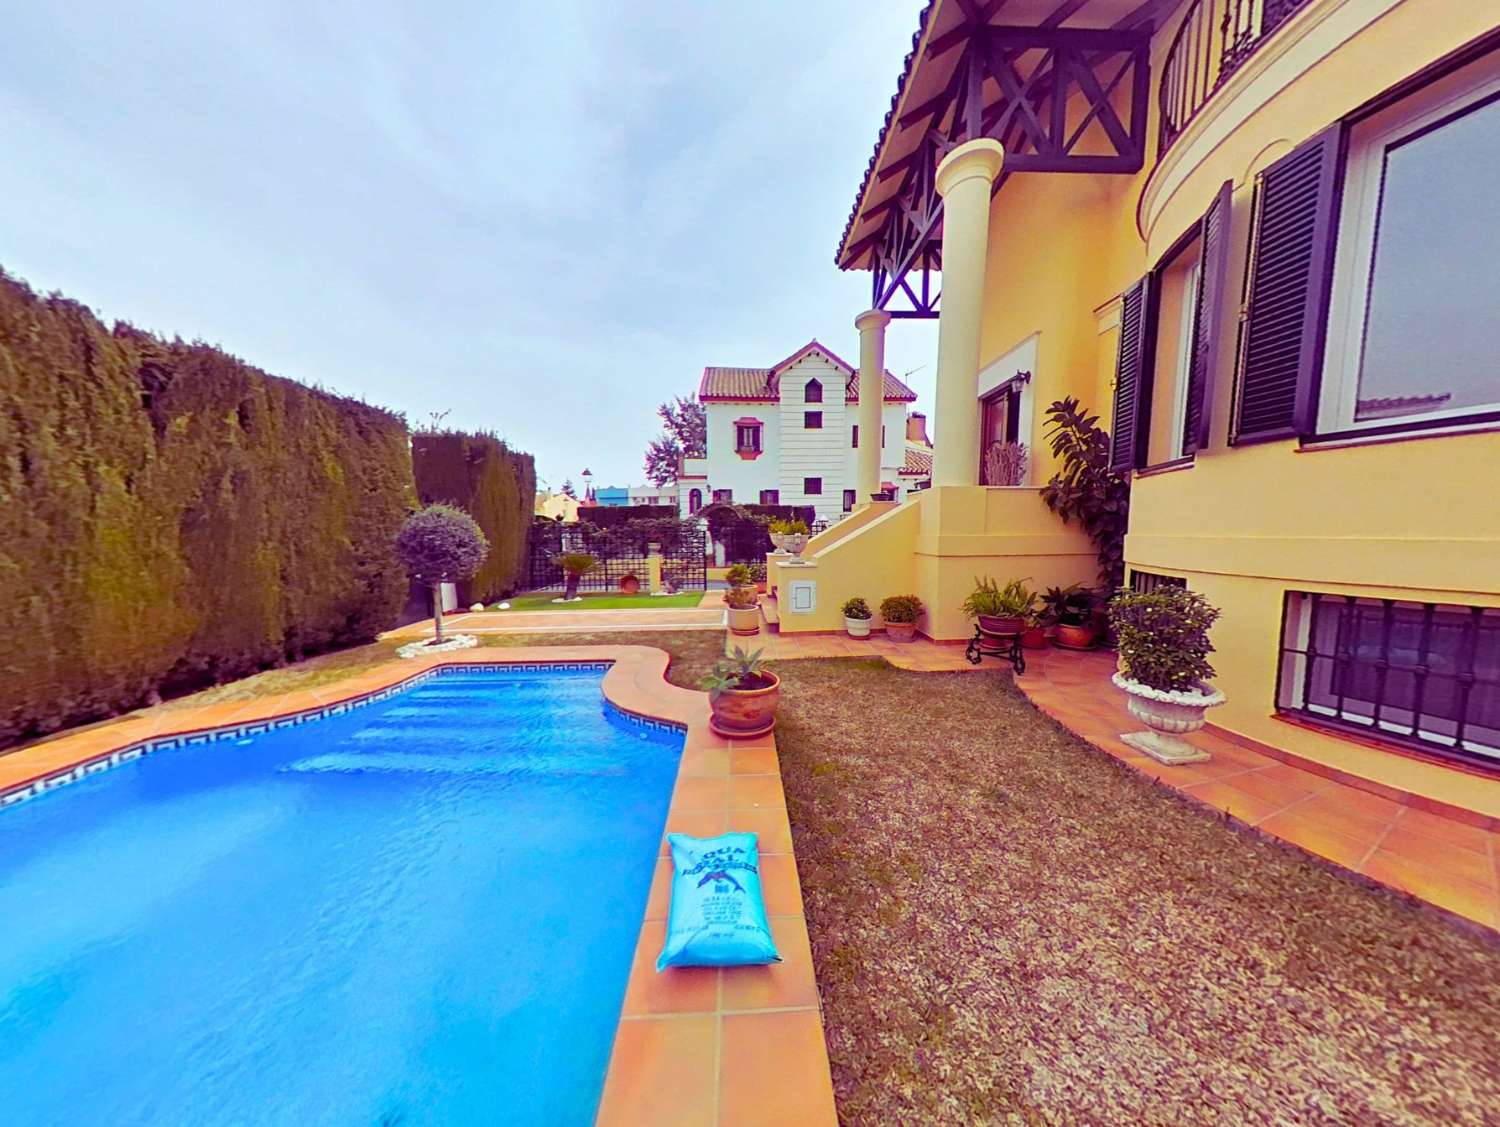 Detached 5-bedroom villa with garden and pool in Capellanía urbanization